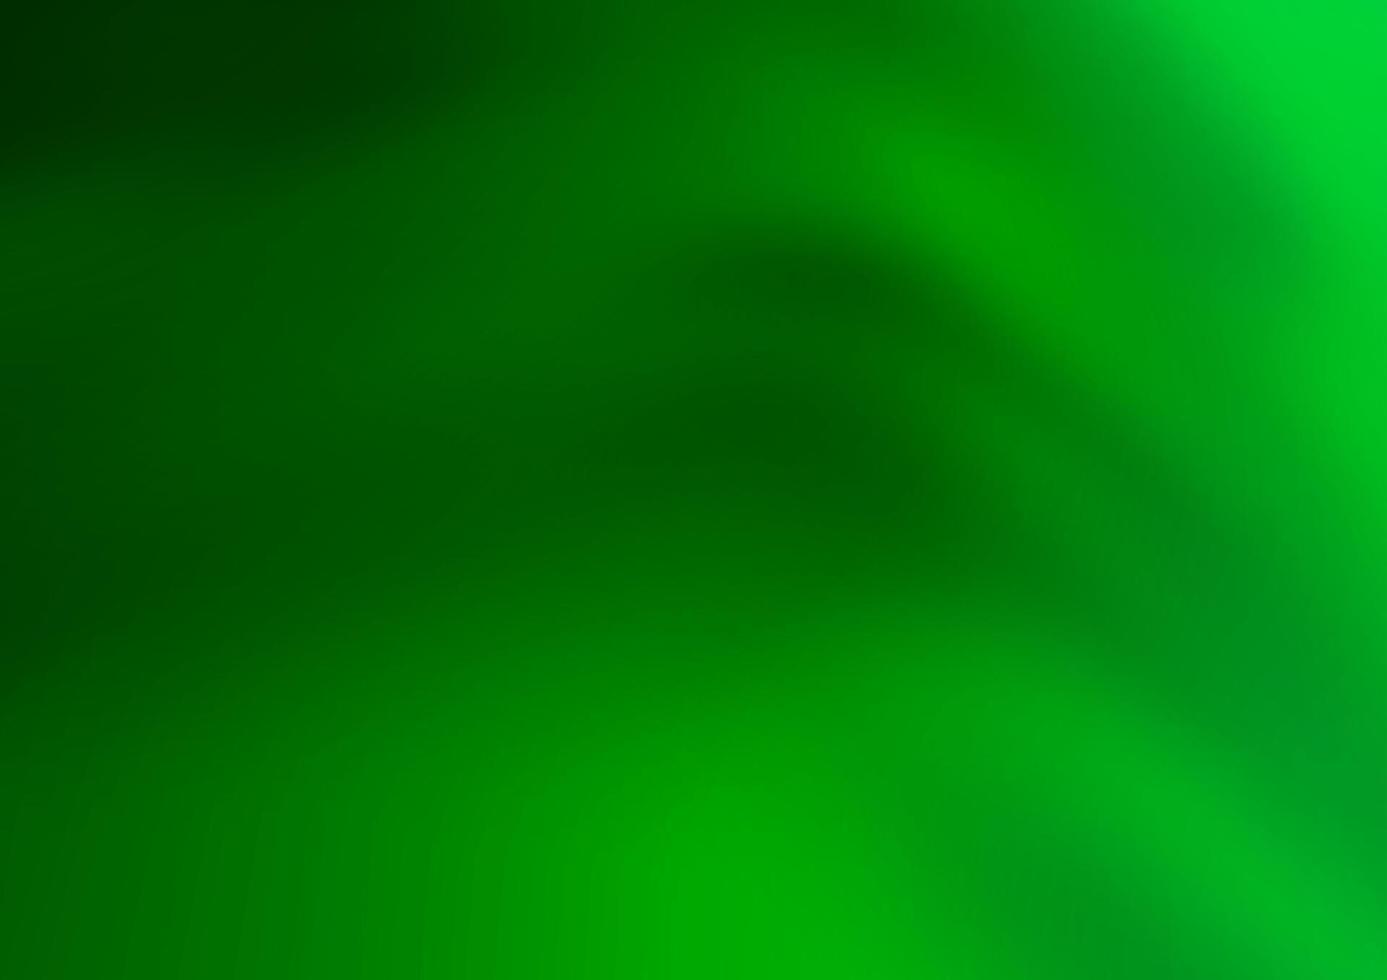 sfondo astratto vettoriale verde chiaro.